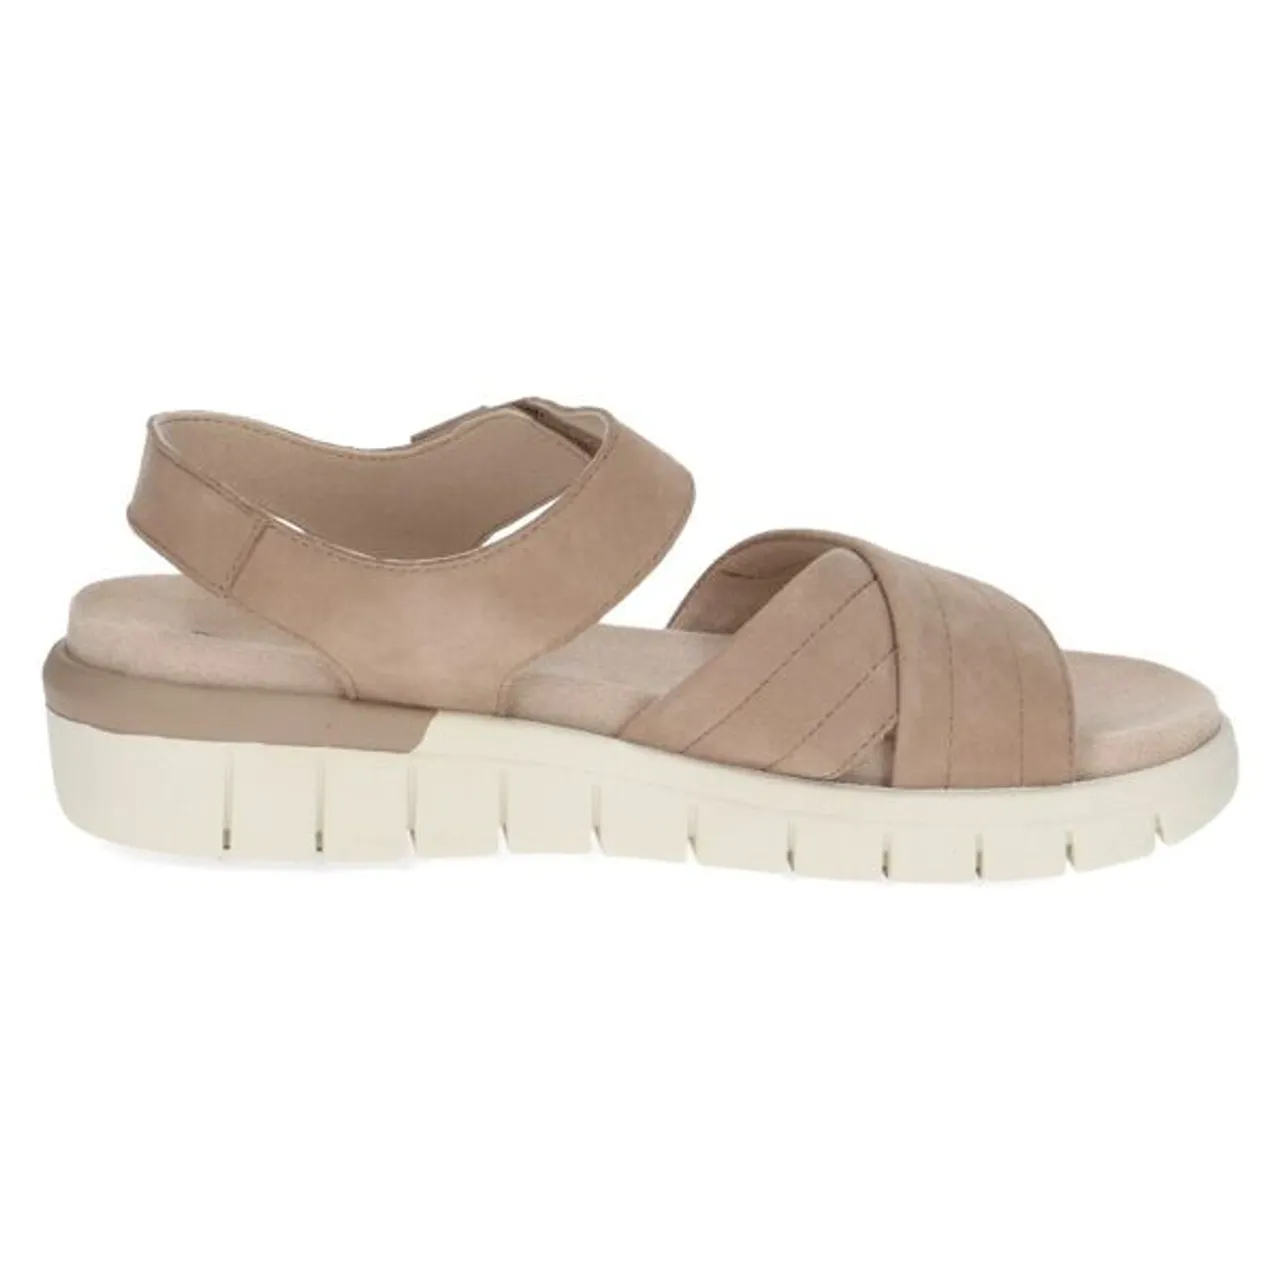 Sandale CAPRICE Gr. 41, beige Damen Schuhe Flats Sommerschuh, Sandalette, Klettschuh, mit MemoryFoam, Weite H